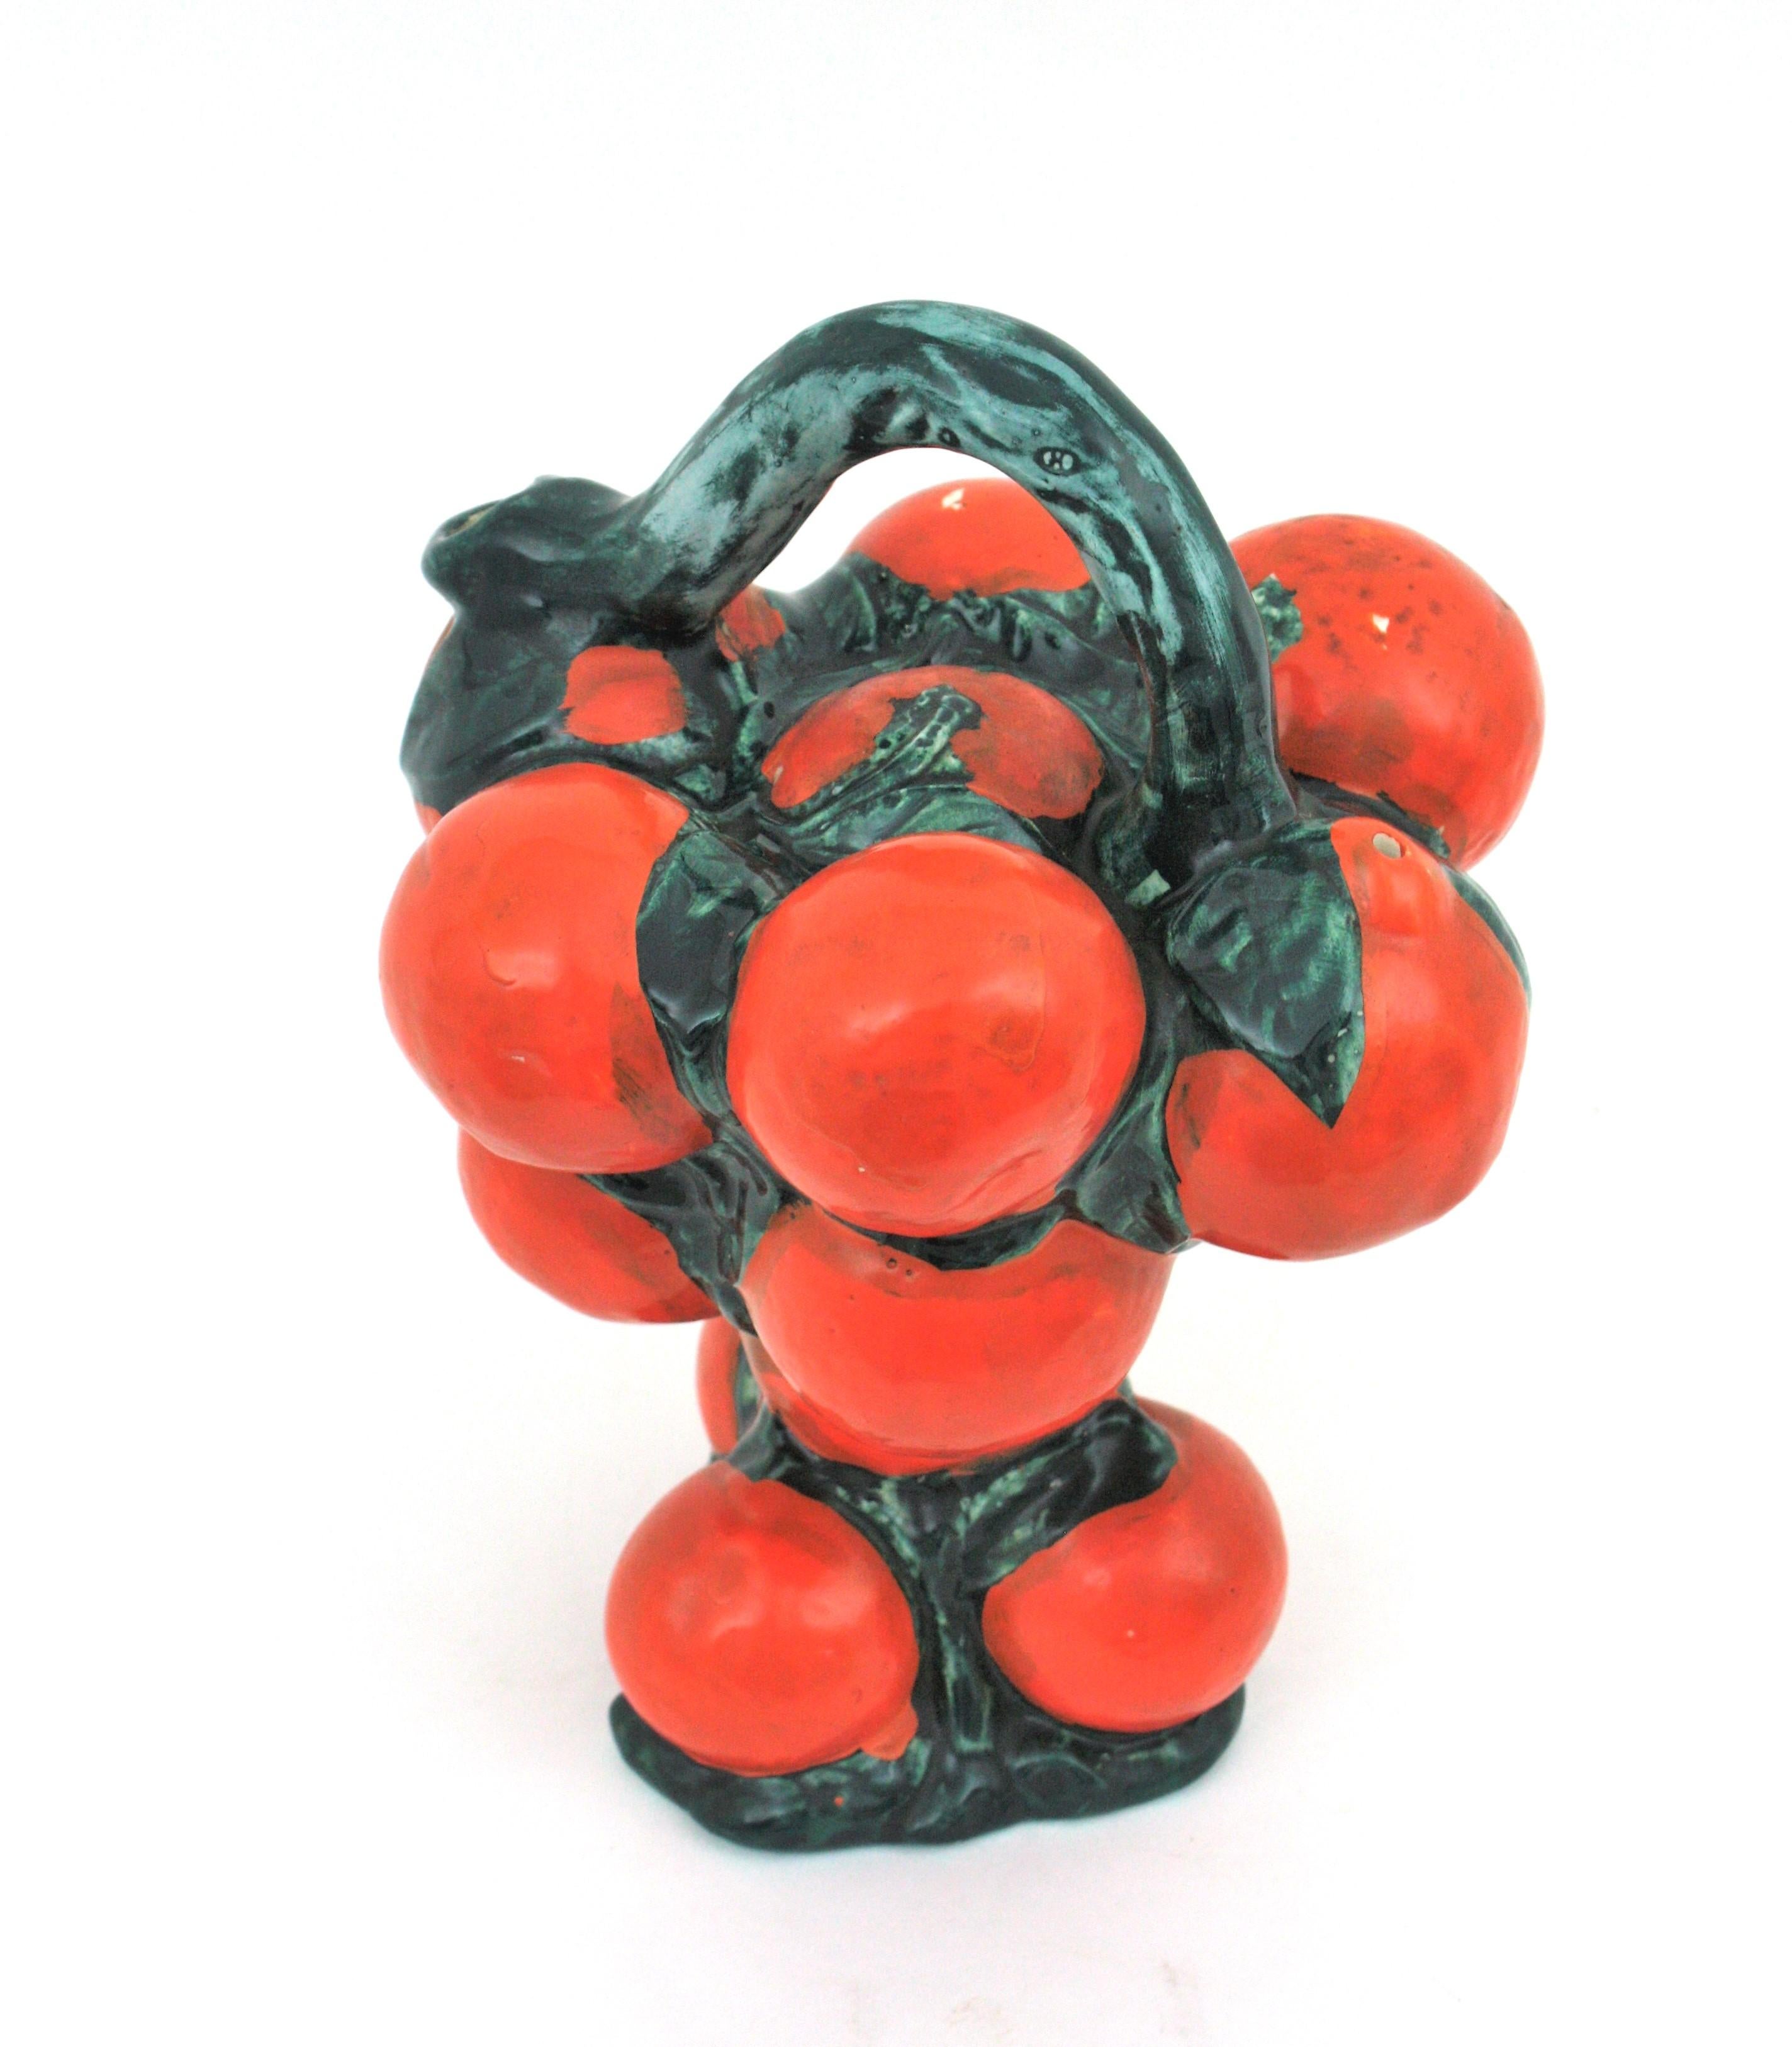 Auffallend realistischer Majolika-Krug aus orangefarbener und grün glasierter Keramik,  Spanien, 1950er-1960er Jahre.
Handbemalte dekorative Keramikkanne von Manises in Form eines Orangenstraußes.
Ein cooler Akzent für jede Küche oder als